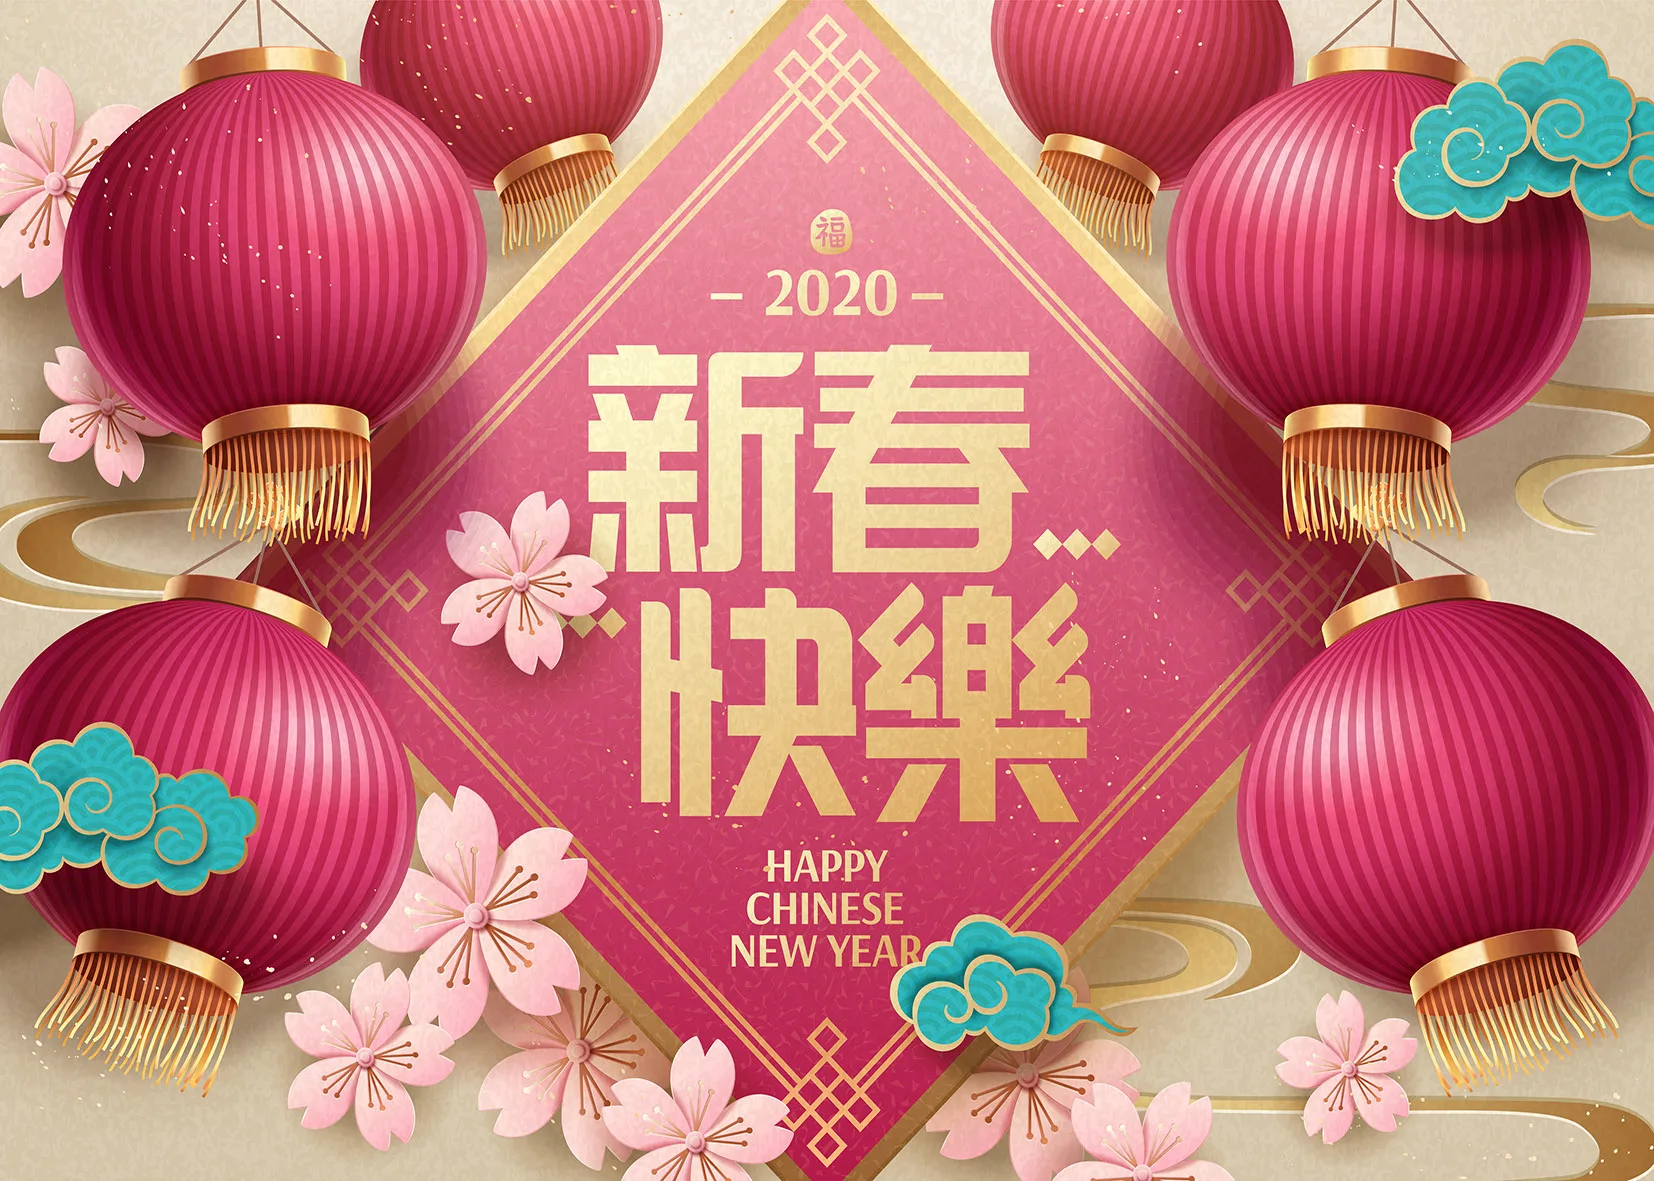 Китайский счастливый год фон для фотосъемки розовый фонарь вишня цветы Декор фотографический фон фотосессия Фотостудия